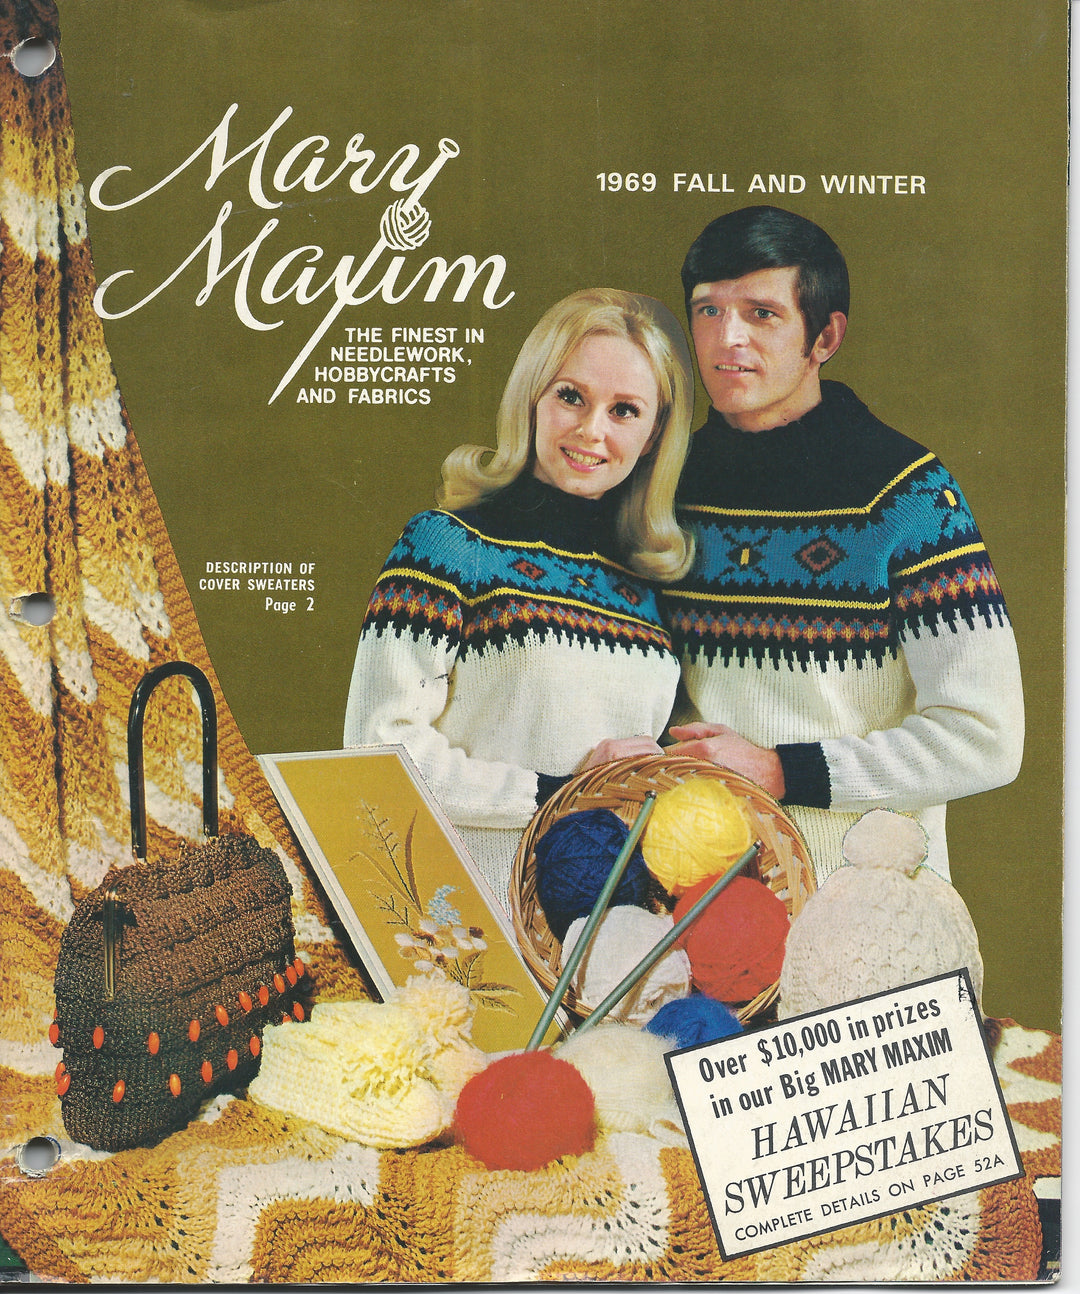 Mary Maxim Sock Yarn Mystery Box 